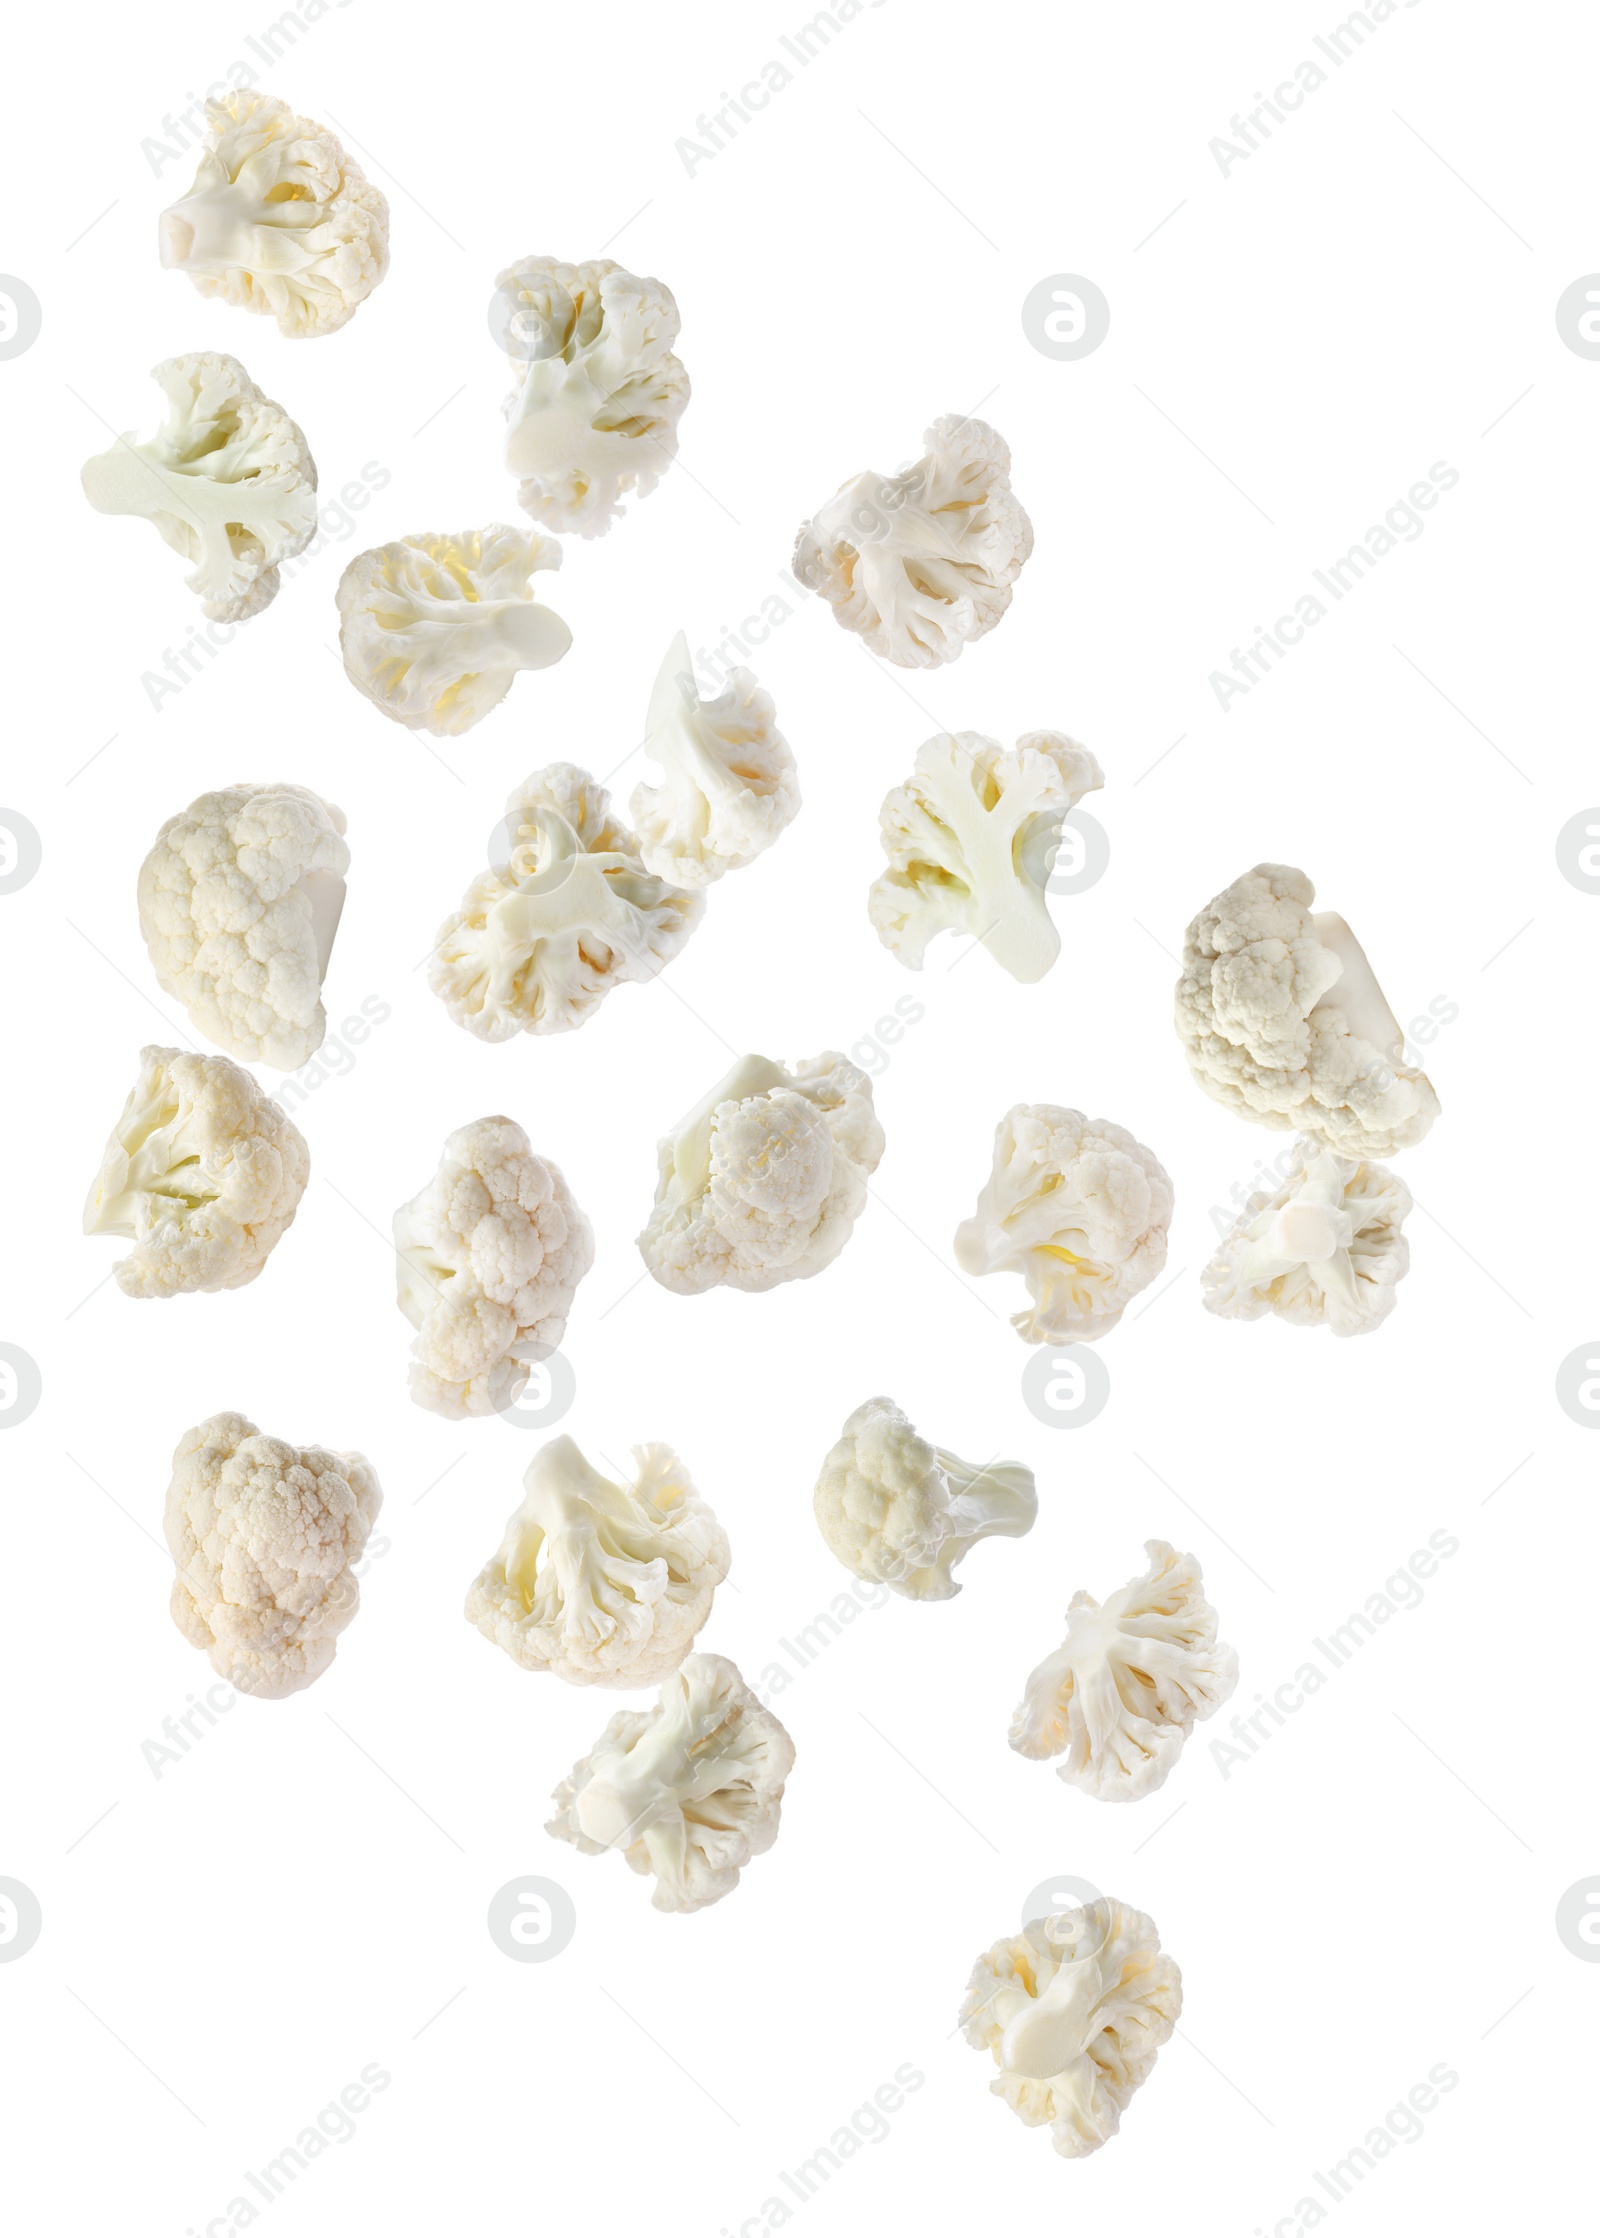 Image of Many fresh cauliflower florets falling on white background